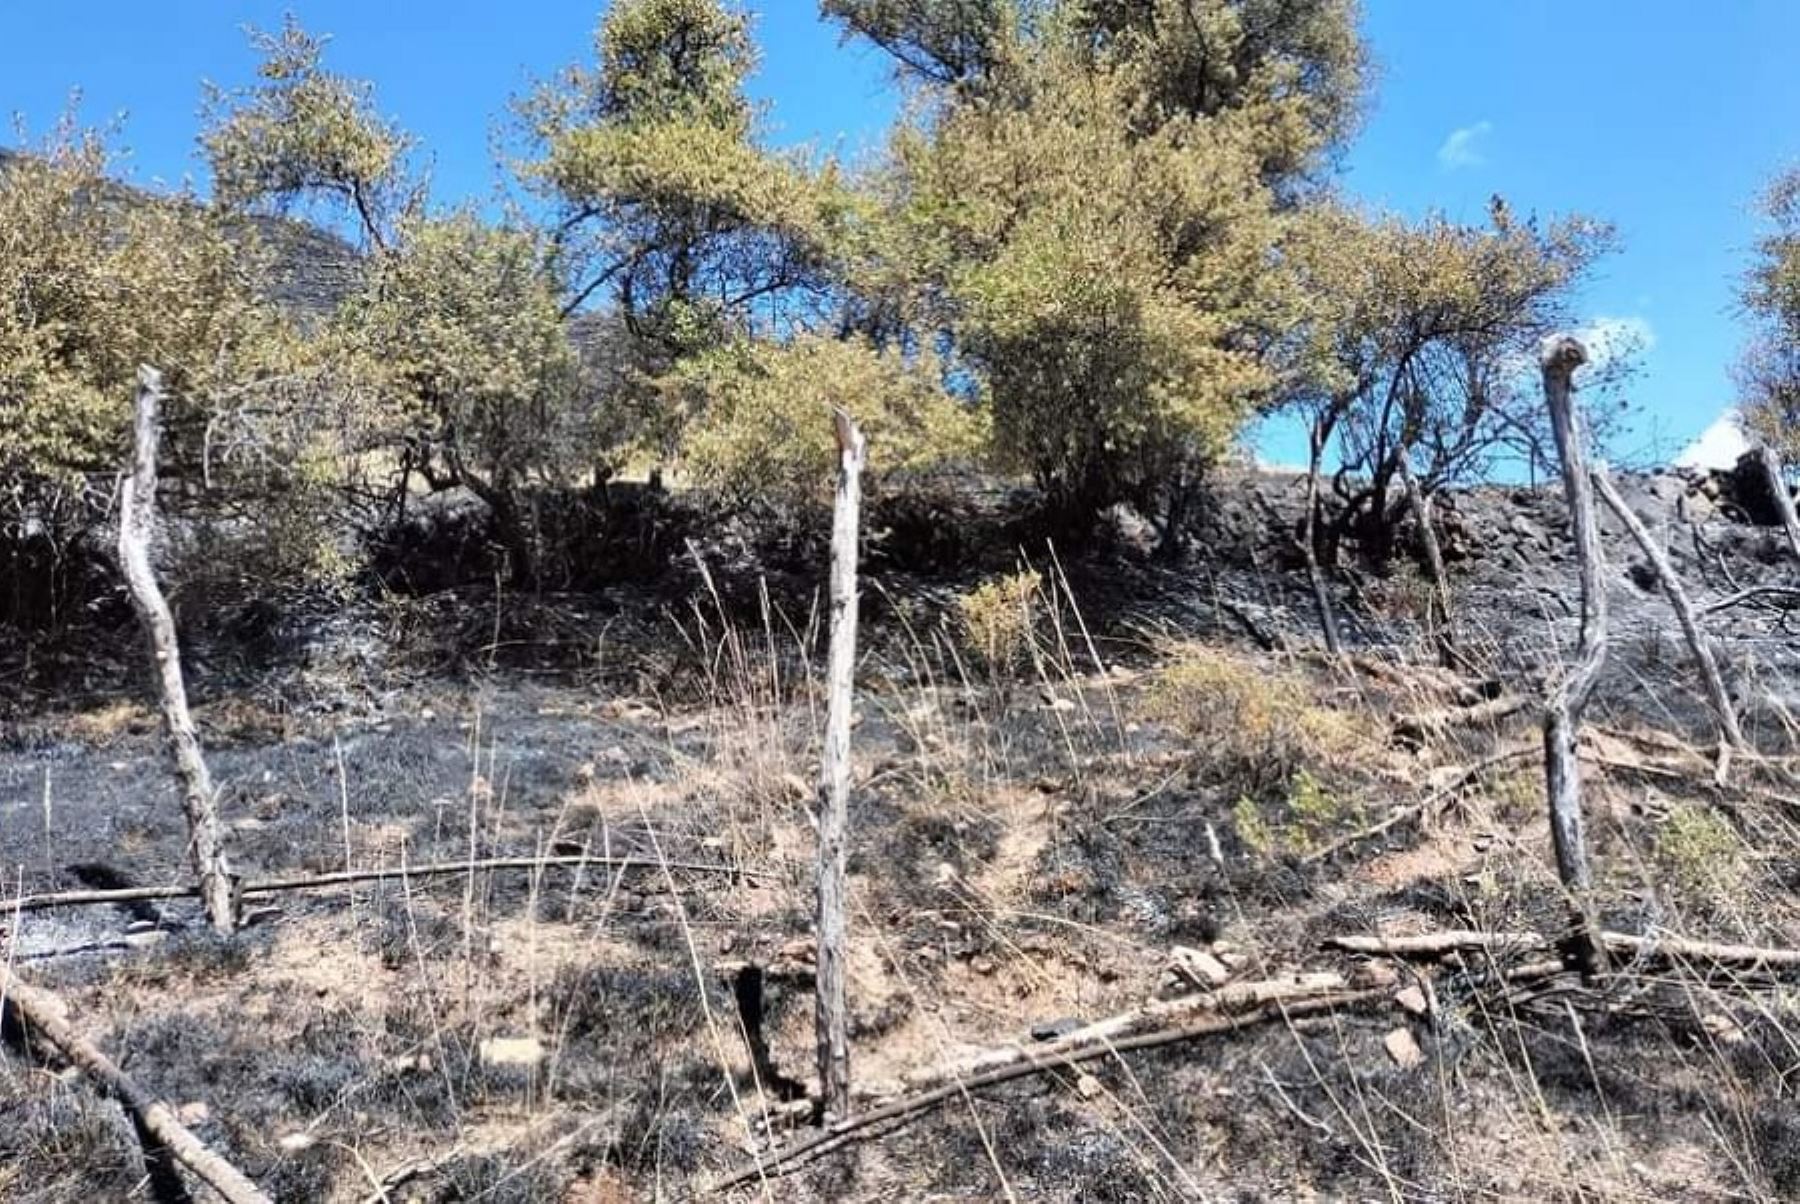 Un incendio forestal de grandes proporciones que afectó más de 300 hectáreas de vegetación y provocó la muerte de varias especies de fauna, se registró en el centro poblado de Pacomarca, perteneciente al distrito de Concepción, en 
la provincia de Vilcas Huamán, región Ayacucho.